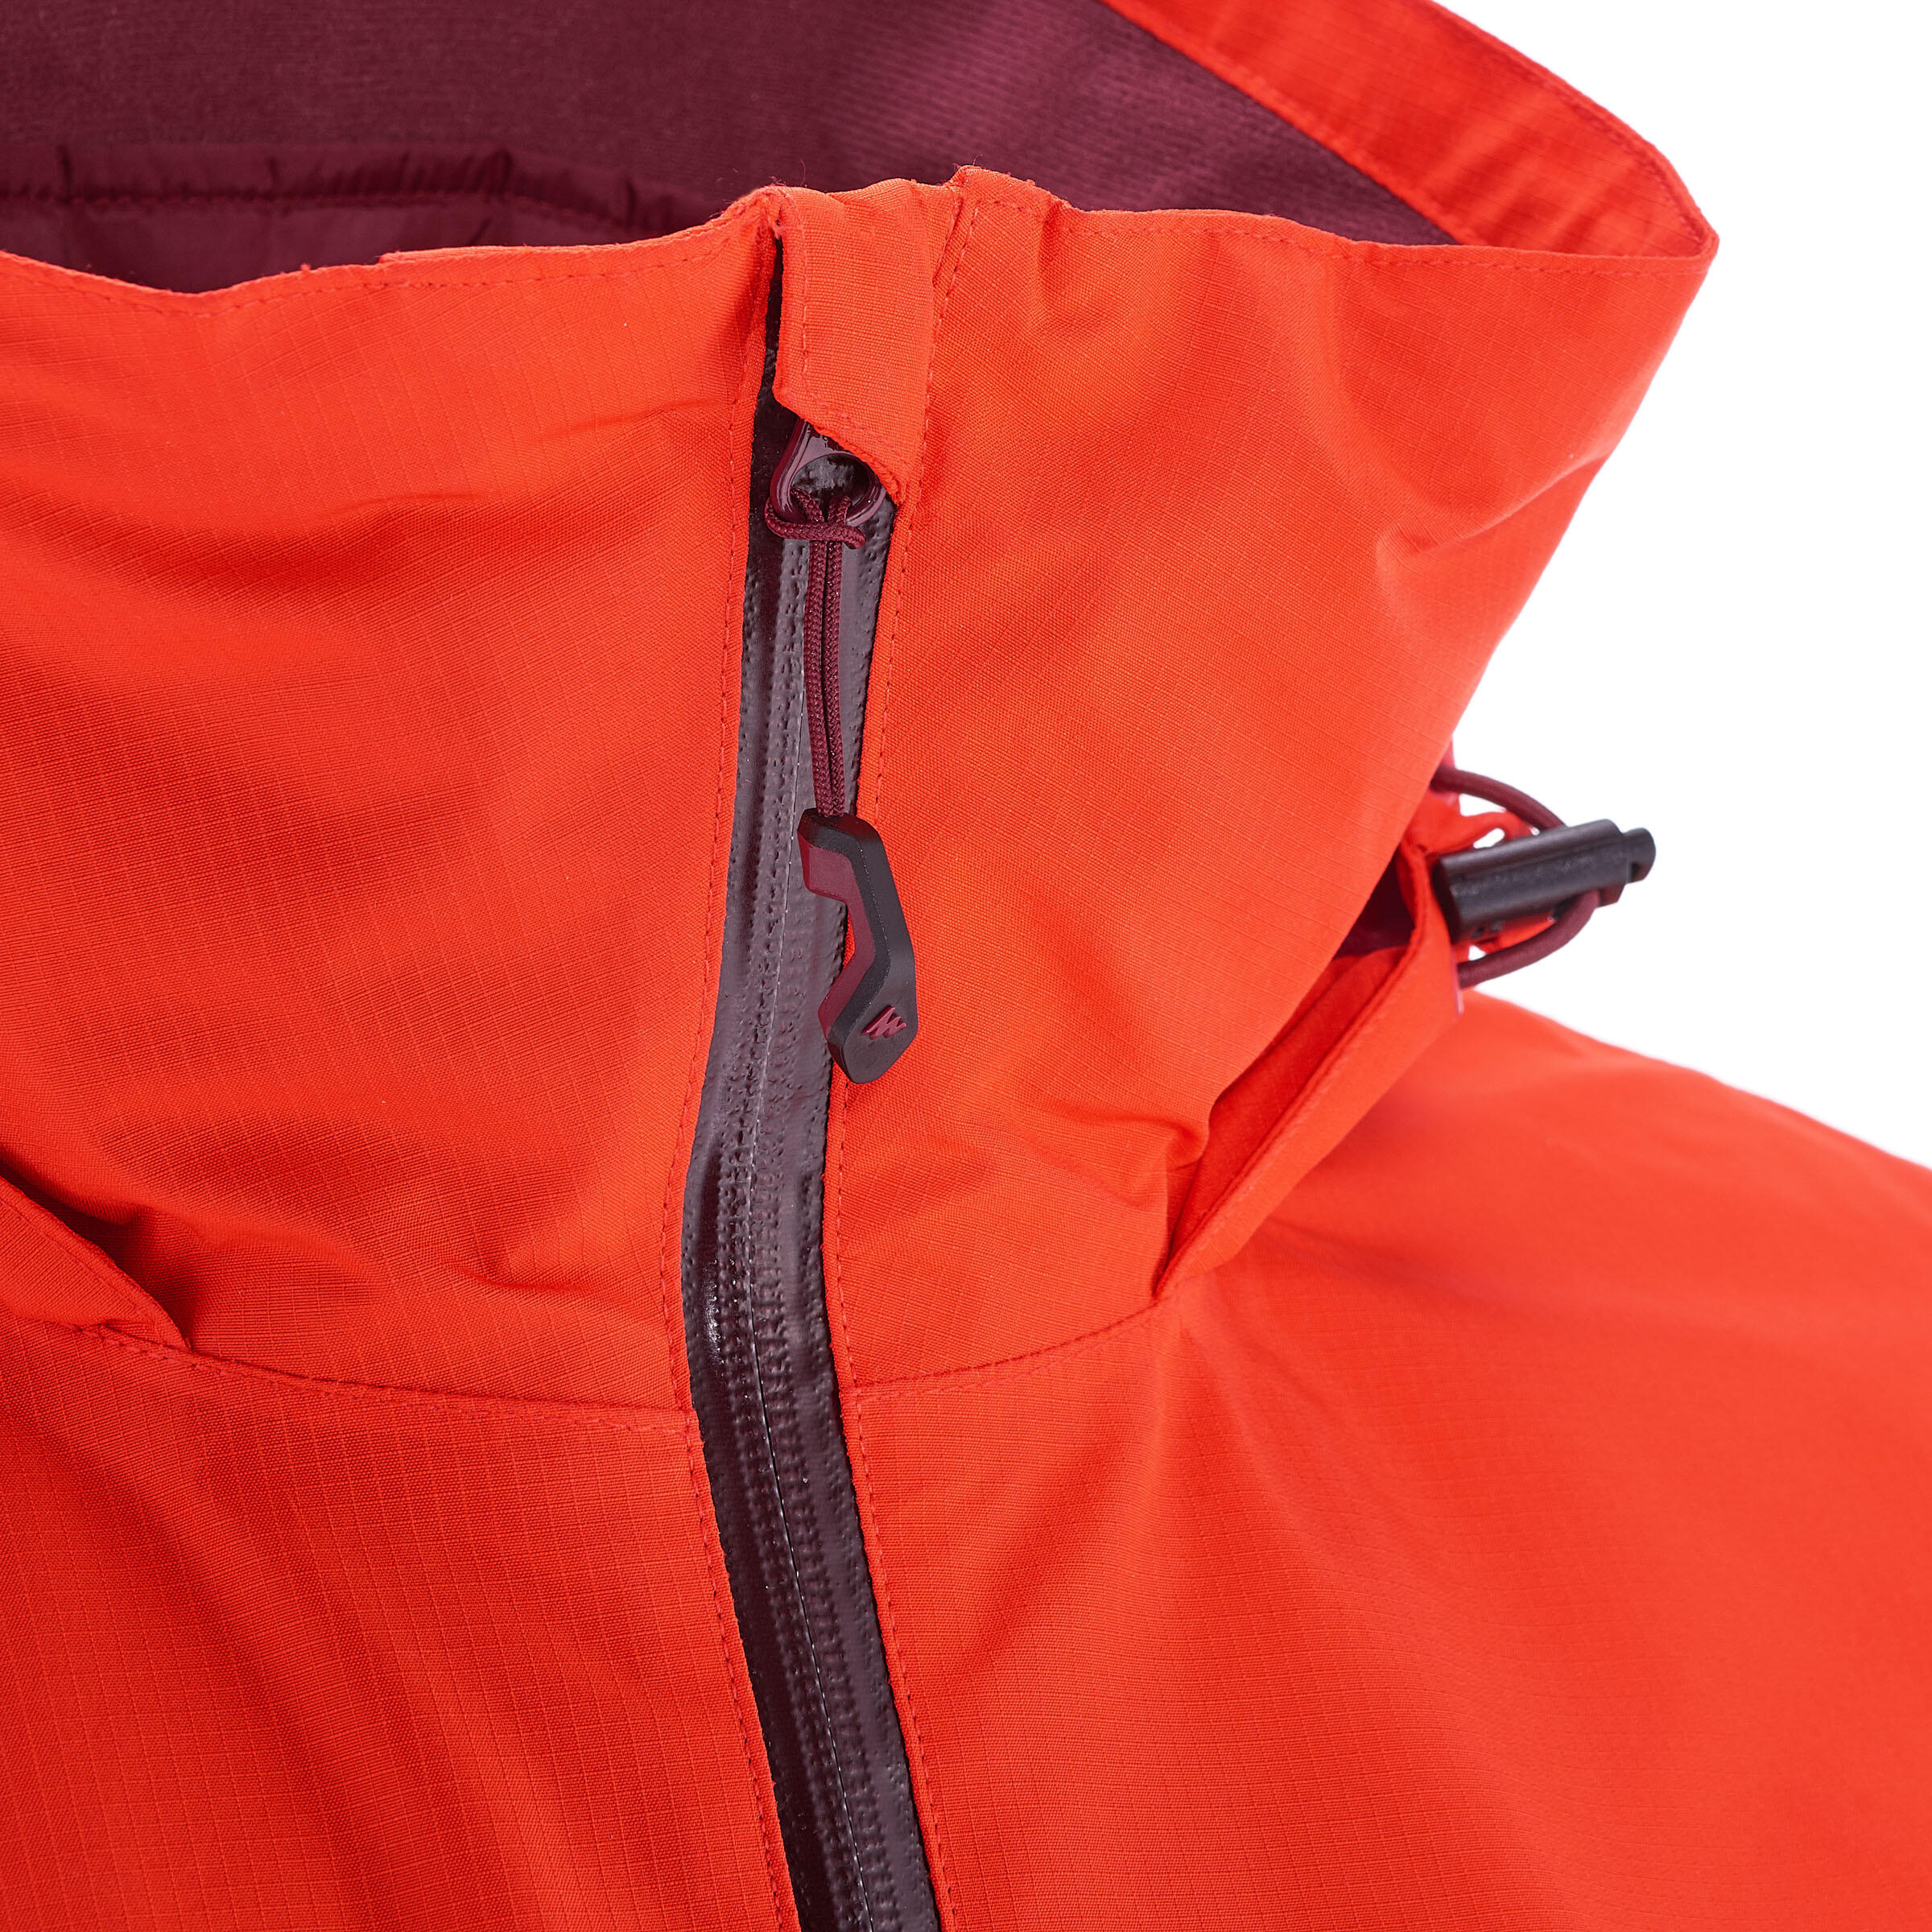 Rainwarm 500 3-in-1 Men's Trekking Jacket - Red 5/17